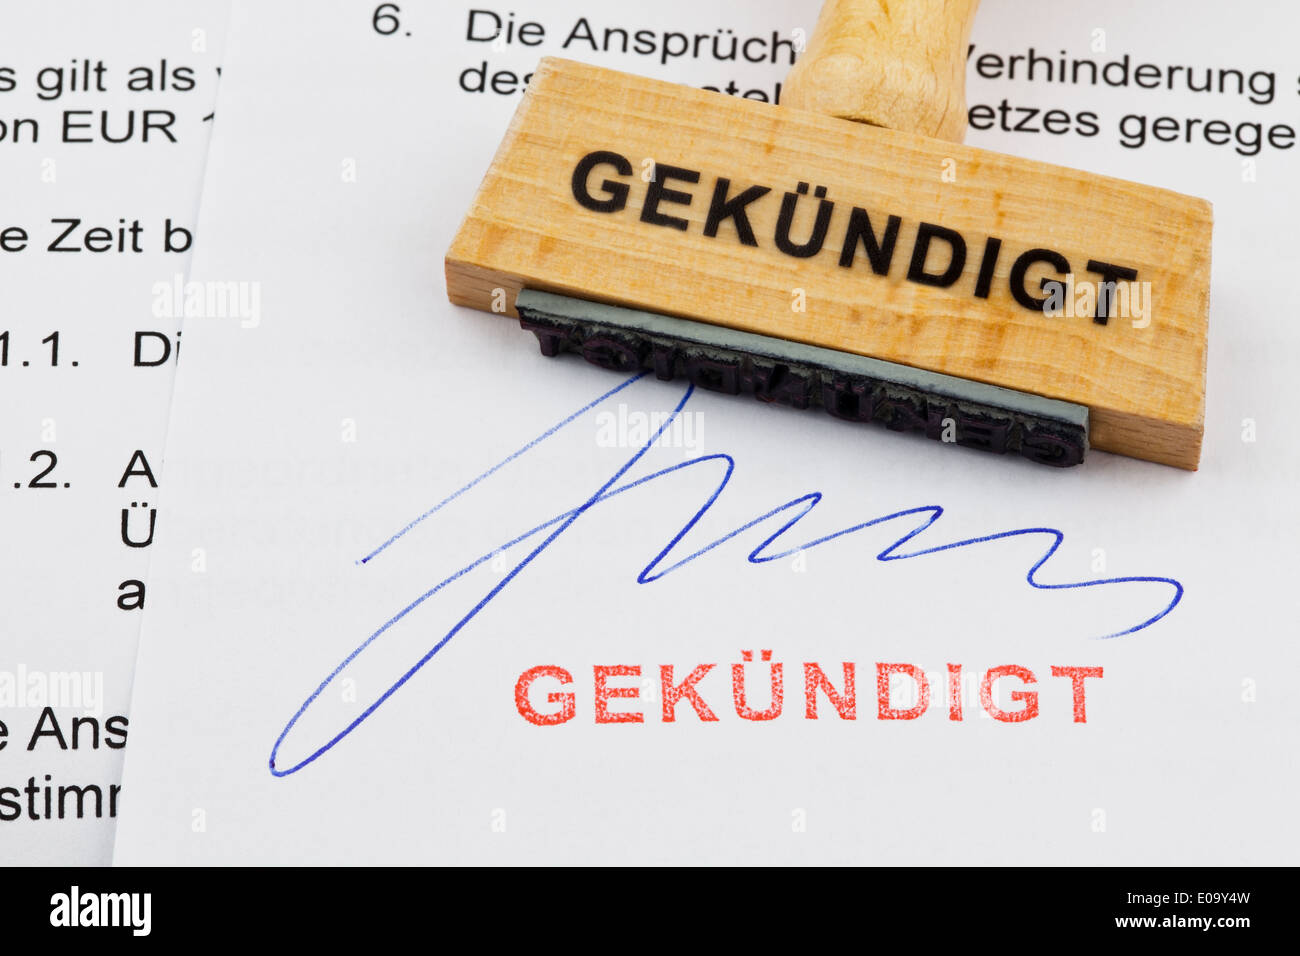 A stamp of wood lies on a document. German label: discontinued, Ein Stempel aus Holz liegt auf einem Dokument. Deutsche Aufschri Stock Photo